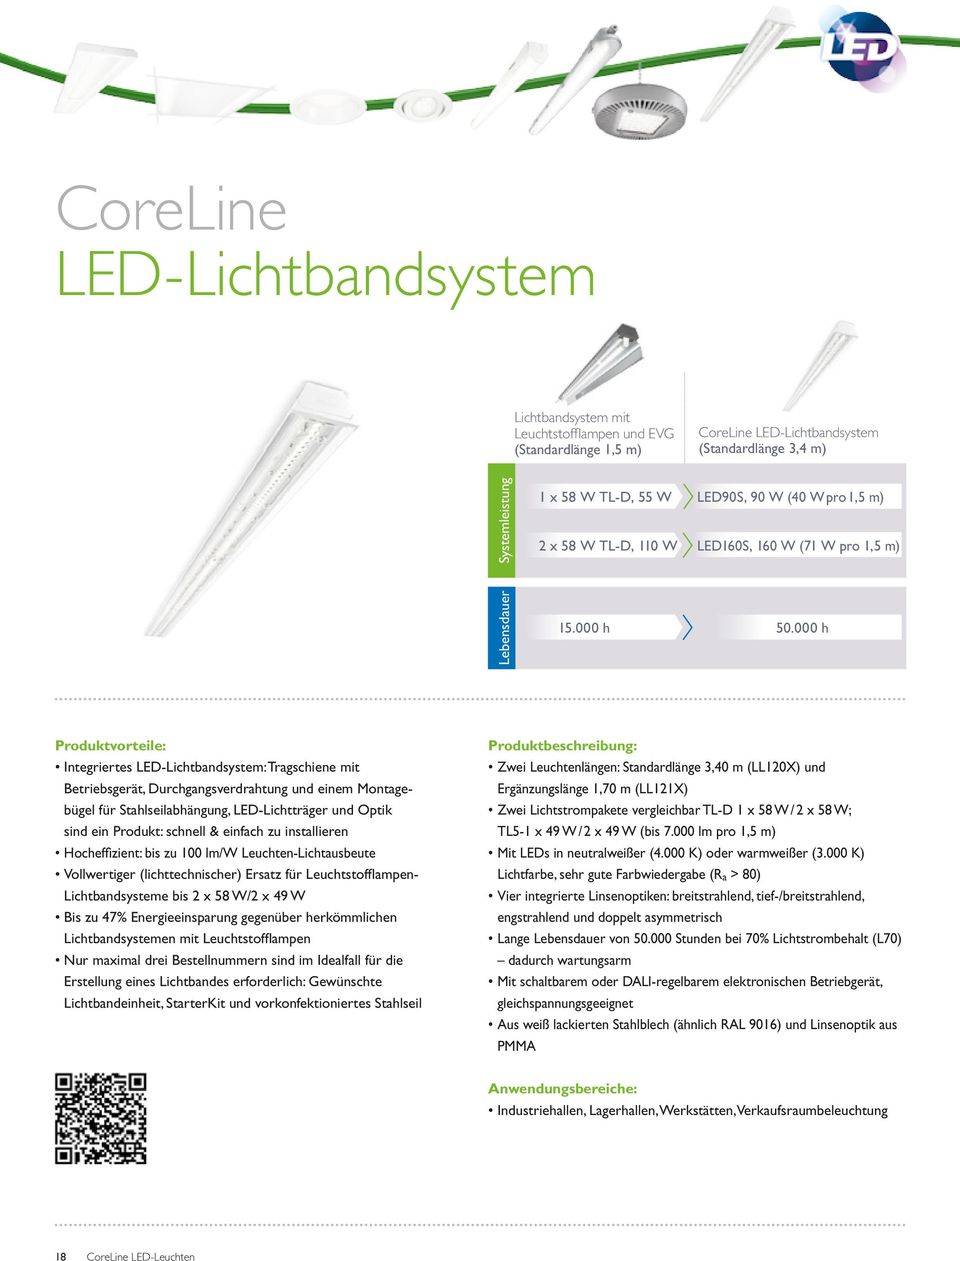 000 h Produktvorteile: Integriertes LED-Lichtbandsystem: Tragschiene mit Betriebsgerät, Durchgangsverdrahtung und einem Montagebügel für Stahlseilabhängung, LED-Lichtträger und Optik sind ein